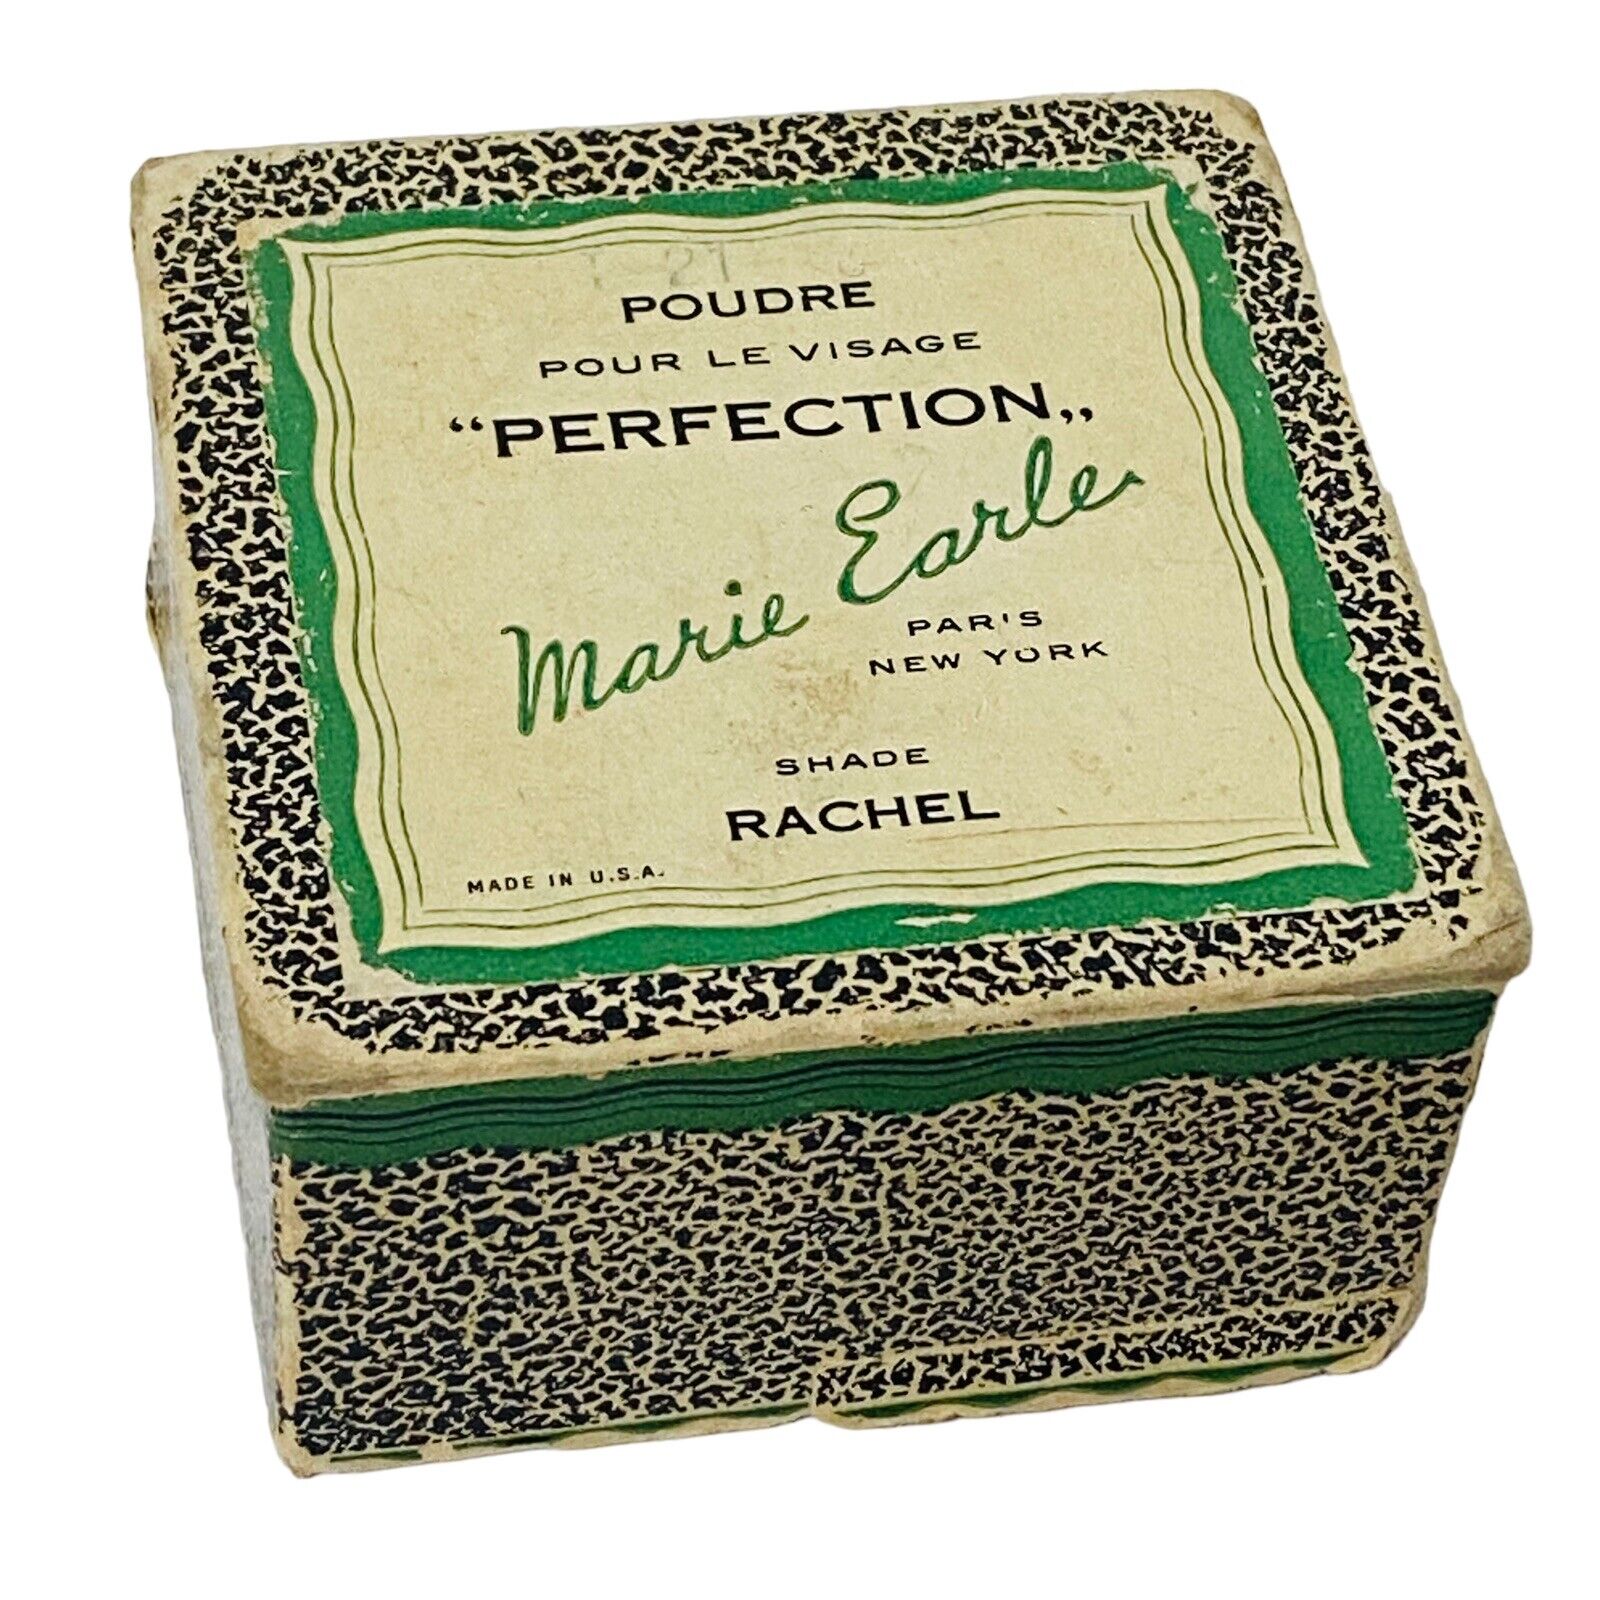 Vintage Marie Earle Poudre Perfection Box Pour Le Visage Paris New York Rachel